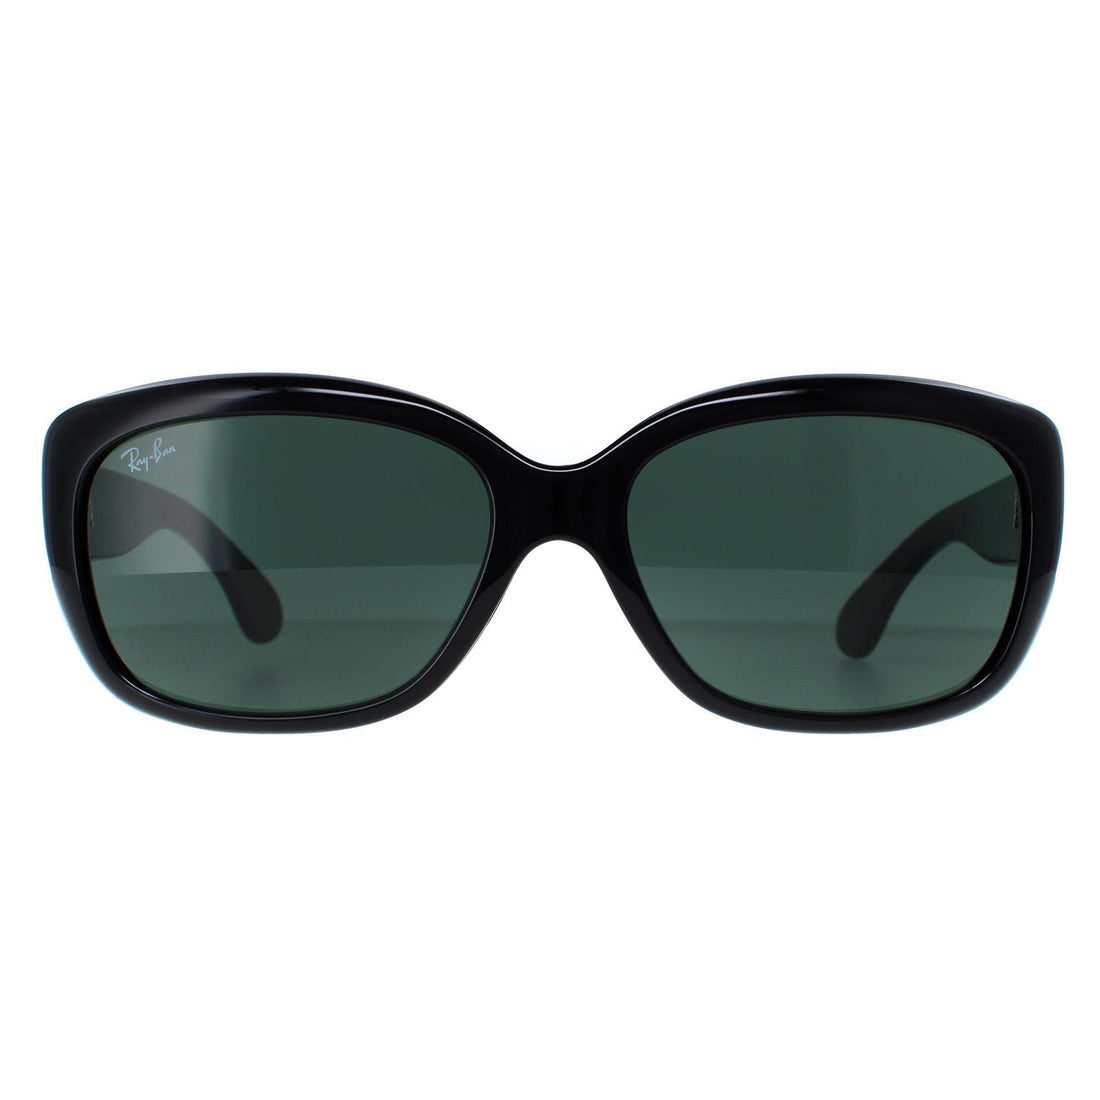 Ray-Ban Sunglasses Jackie Ohh 4101 601/58 Black Green Polarized